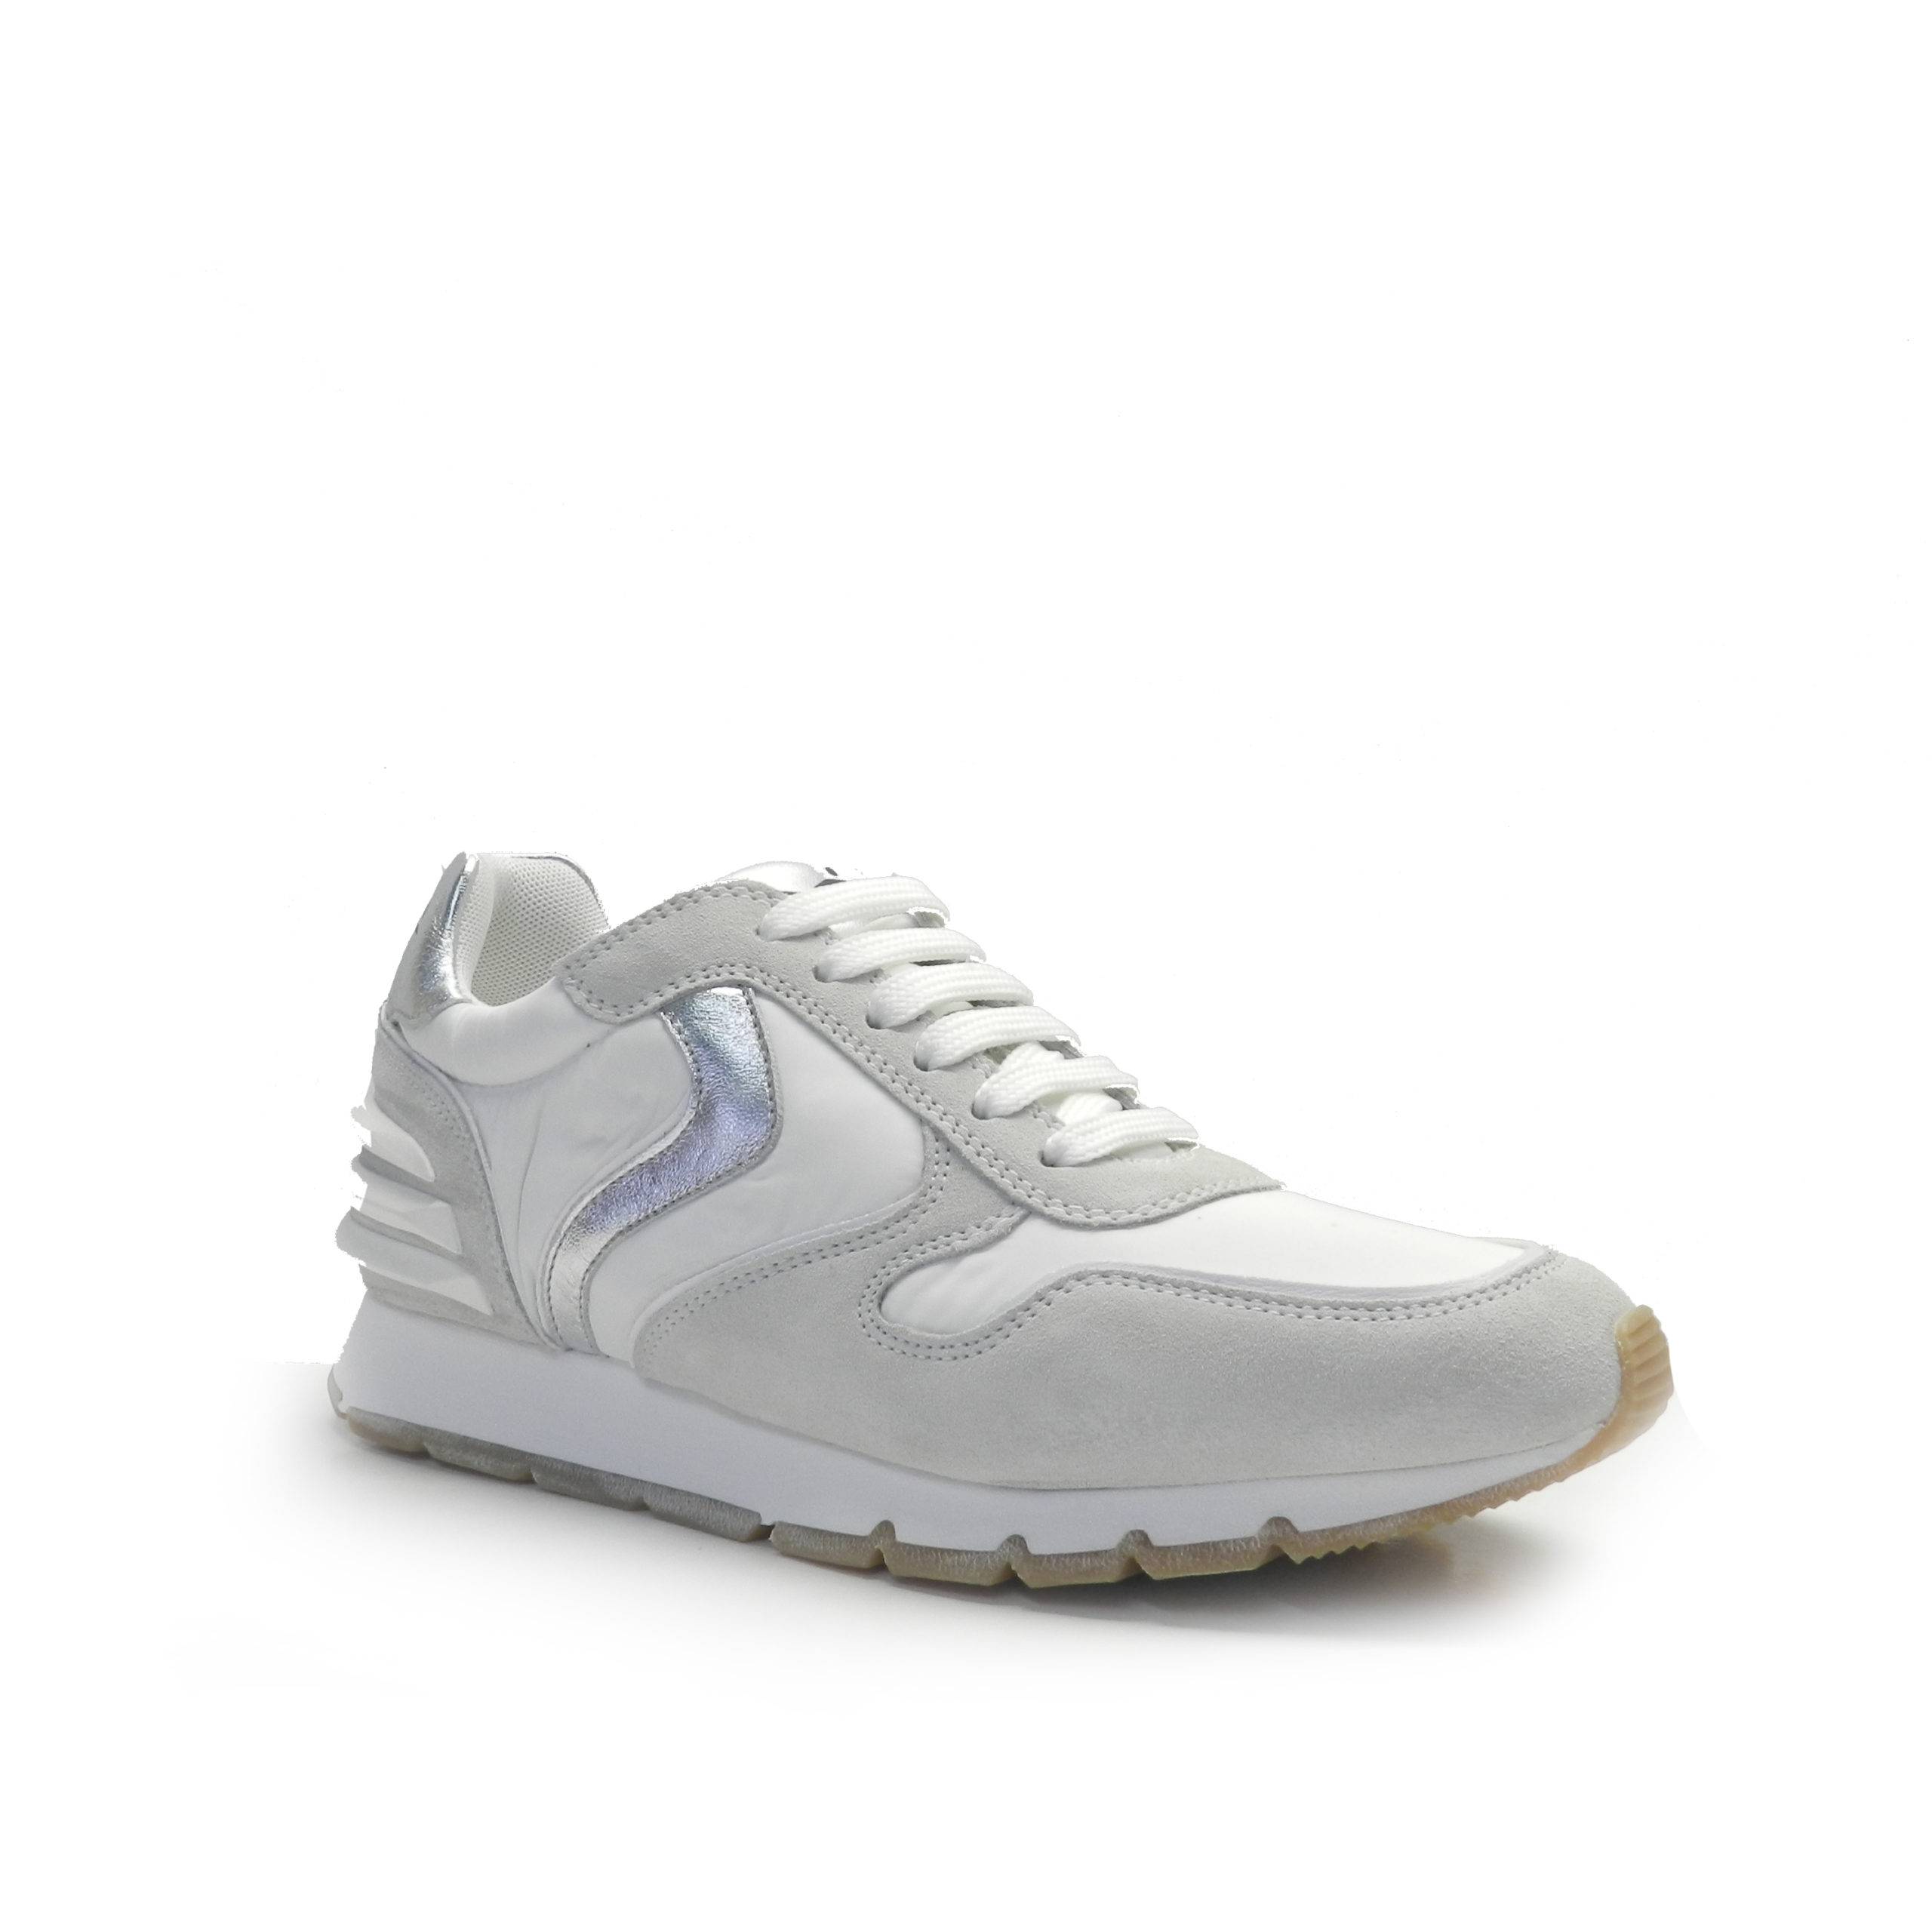 sneakers de cordones combinado en piel de nobuck gris clarito, nylon blanco y el talón en gris, marca Voile Blanche.